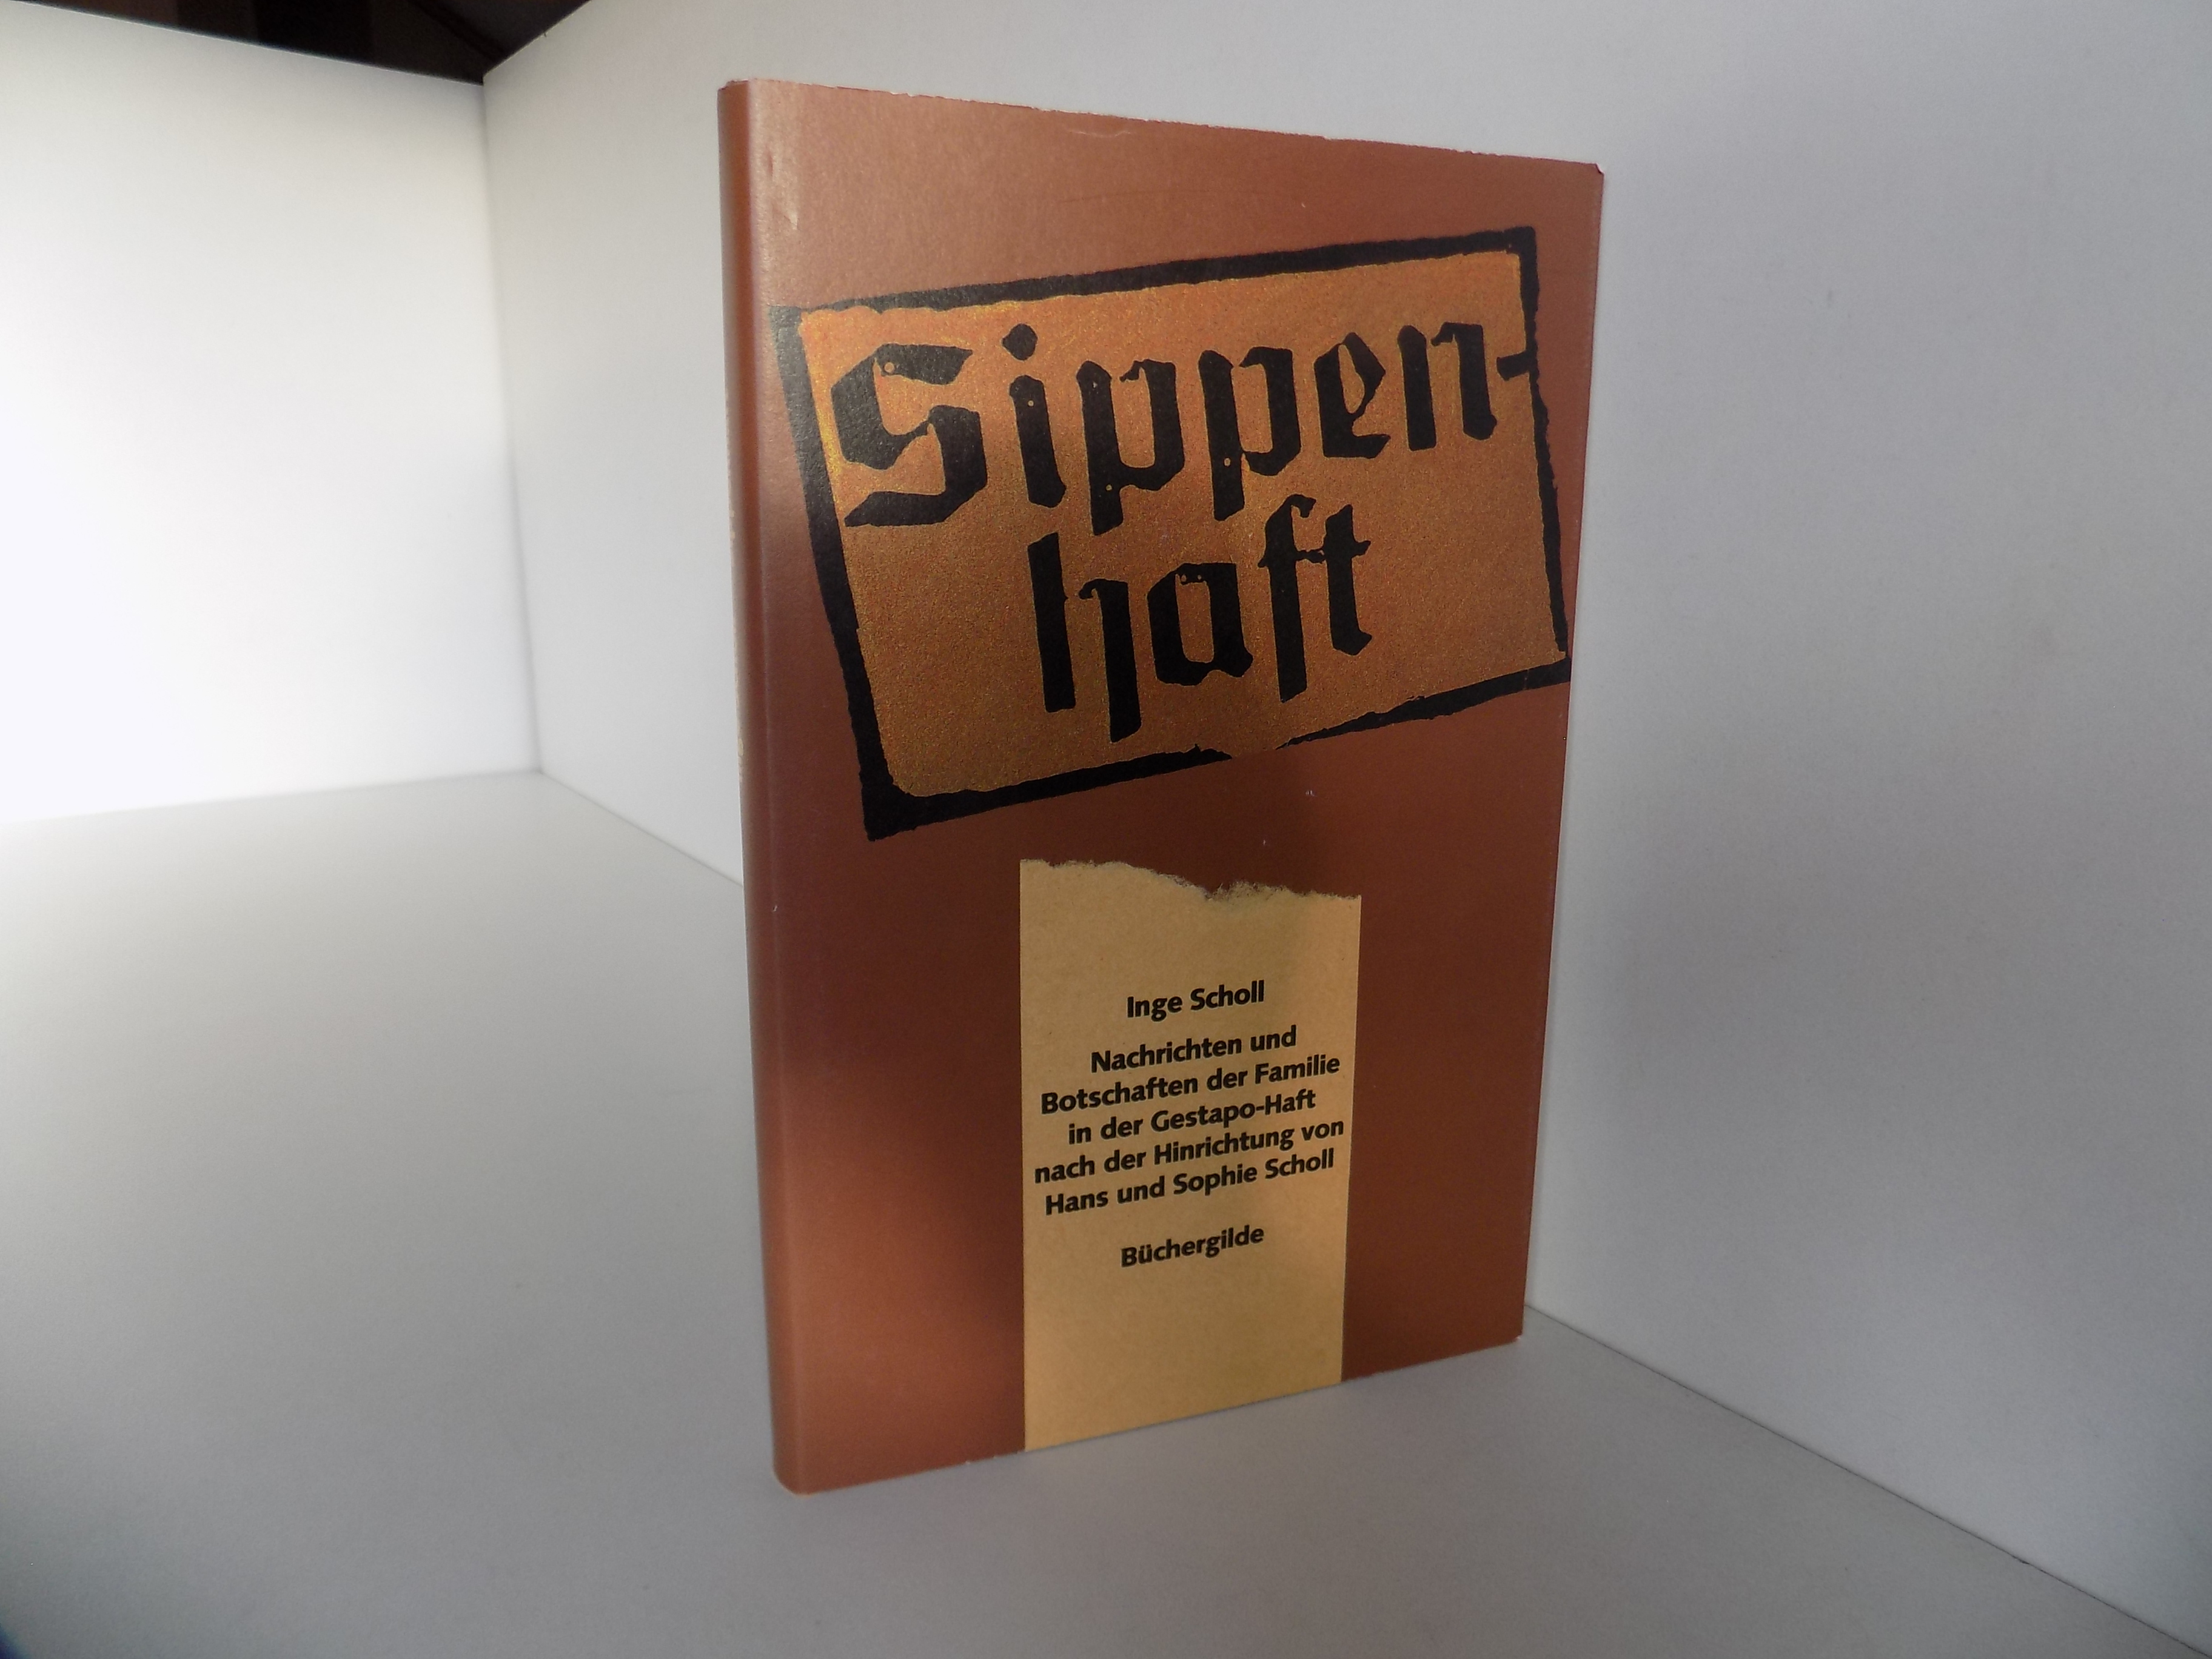 Sippenhaft. Nachrichten und Botschaften der Familie in der Gestapo-Haft nach der Hinrichtung von Hans und Sophie Scholl. - Aicher-Scholl, Inge (Hrsg.)